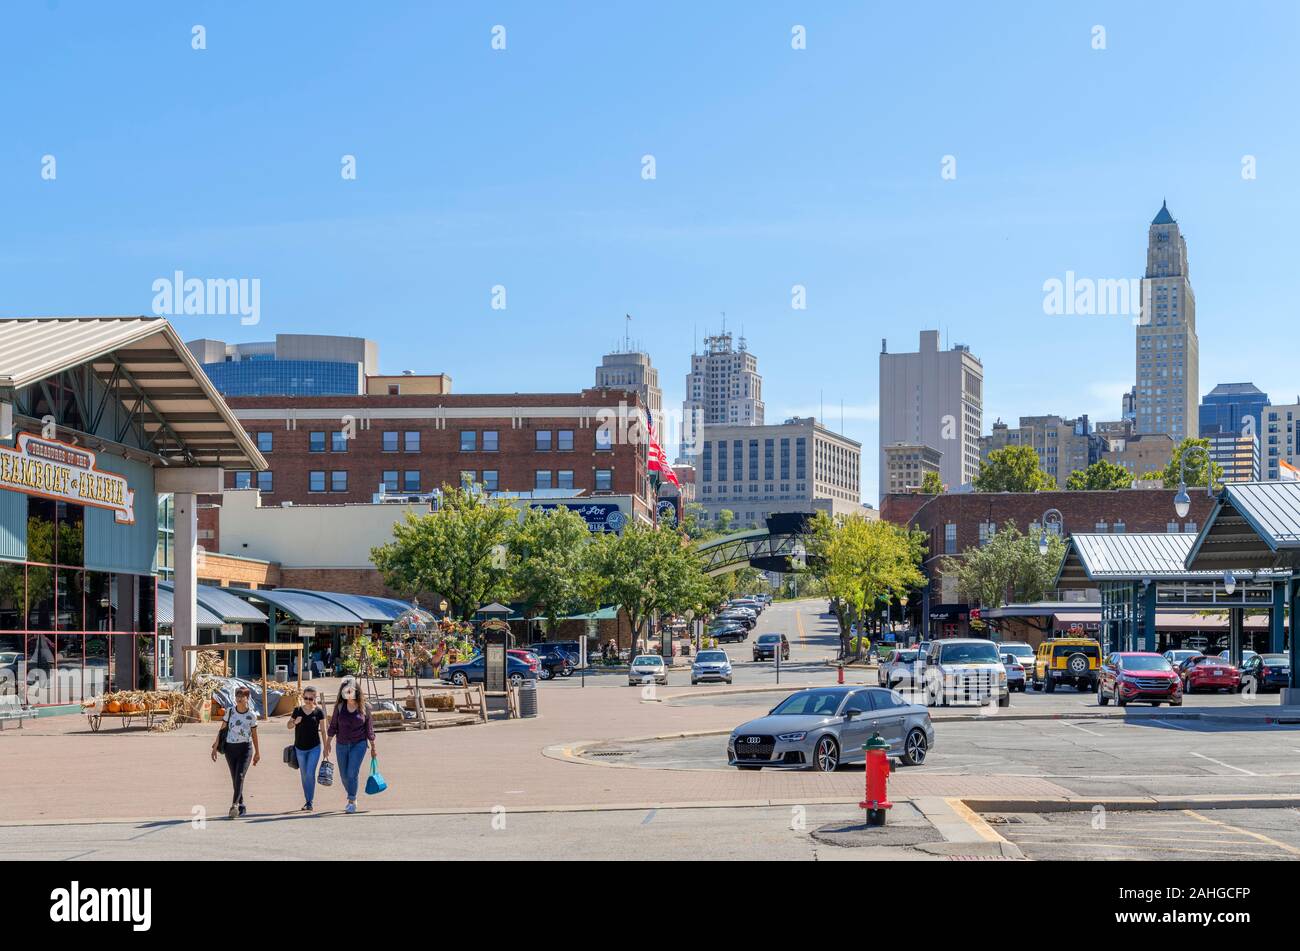 Le centre-ville de la ville historique, le marché du quartier Rivière, Kansas City, Missouri, États-Unis Banque D'Images